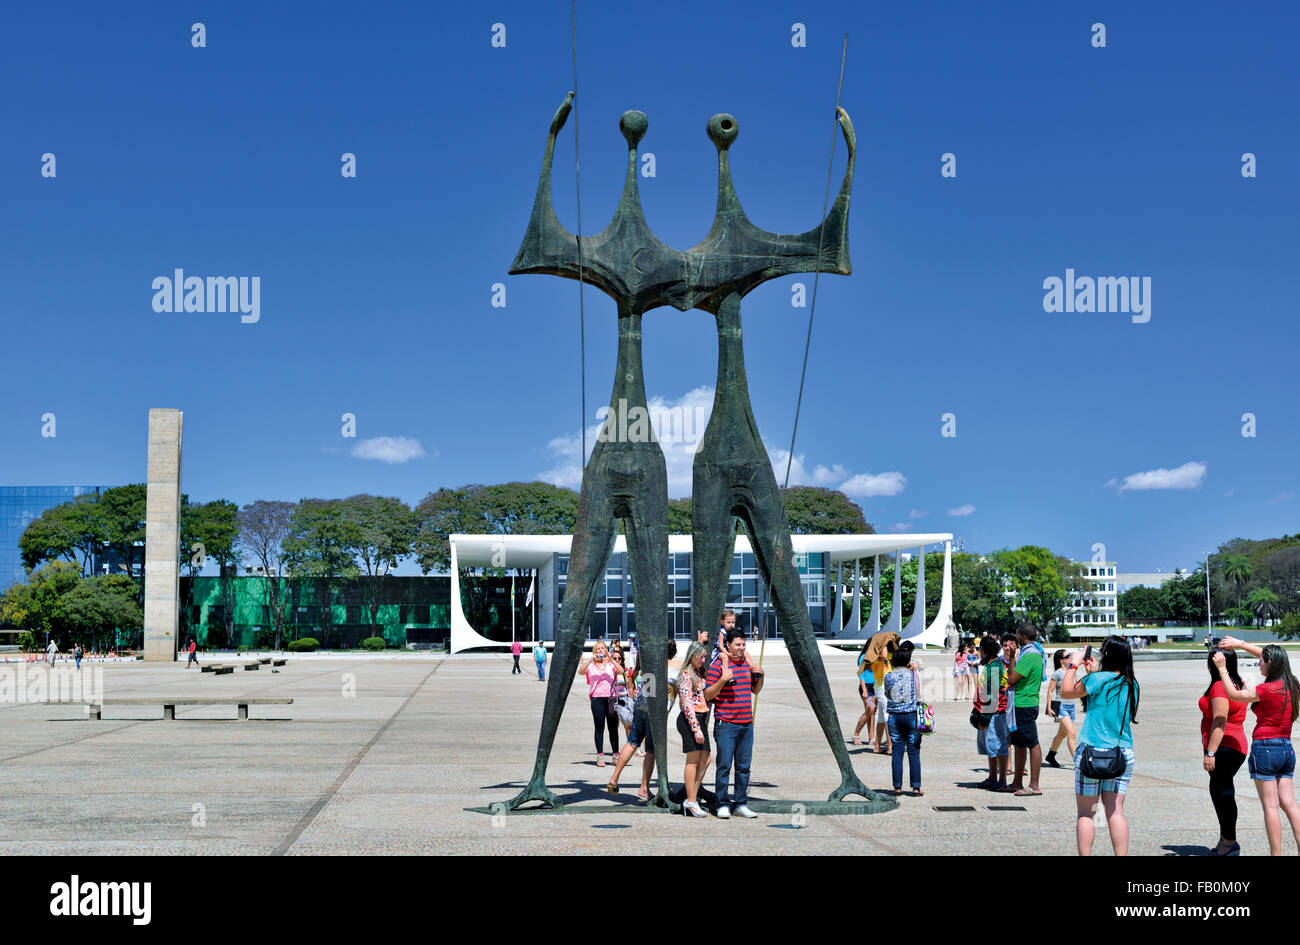 Il Brasile, Brasilia: turisti tenendo snap shots con telefoni intelligenti a 'Os Candangos' monumento in Piazza Praça dos Tres Poderes Foto Stock